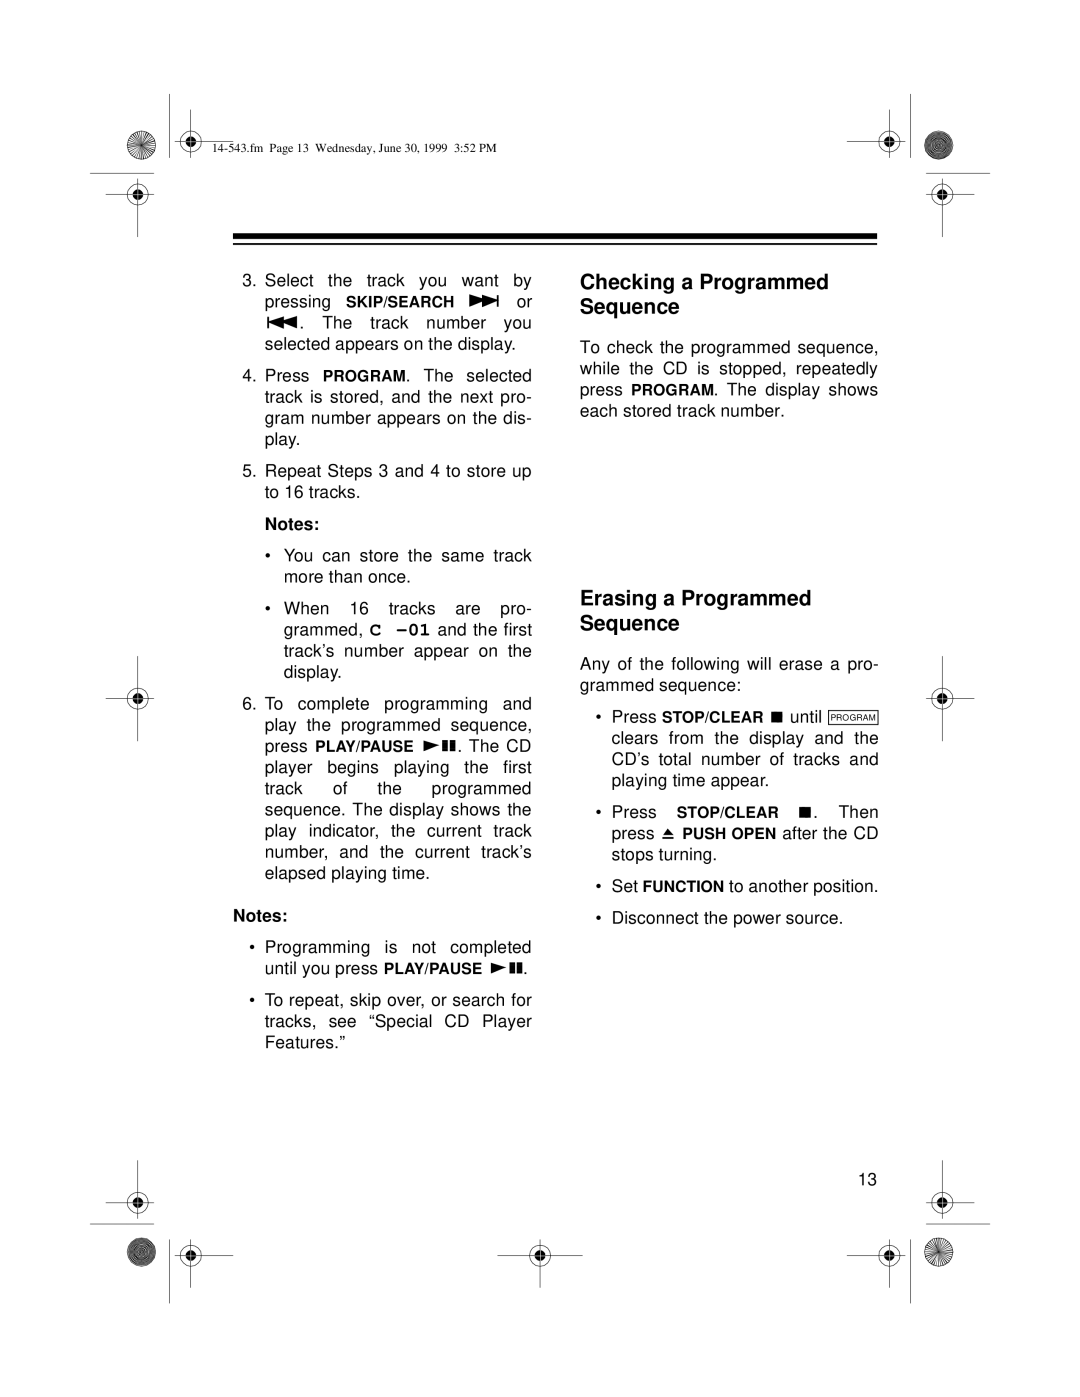 Radio Shack CD-3319 owner manual Checking a Programmed Sequence, Erasing a Programmed Sequence 